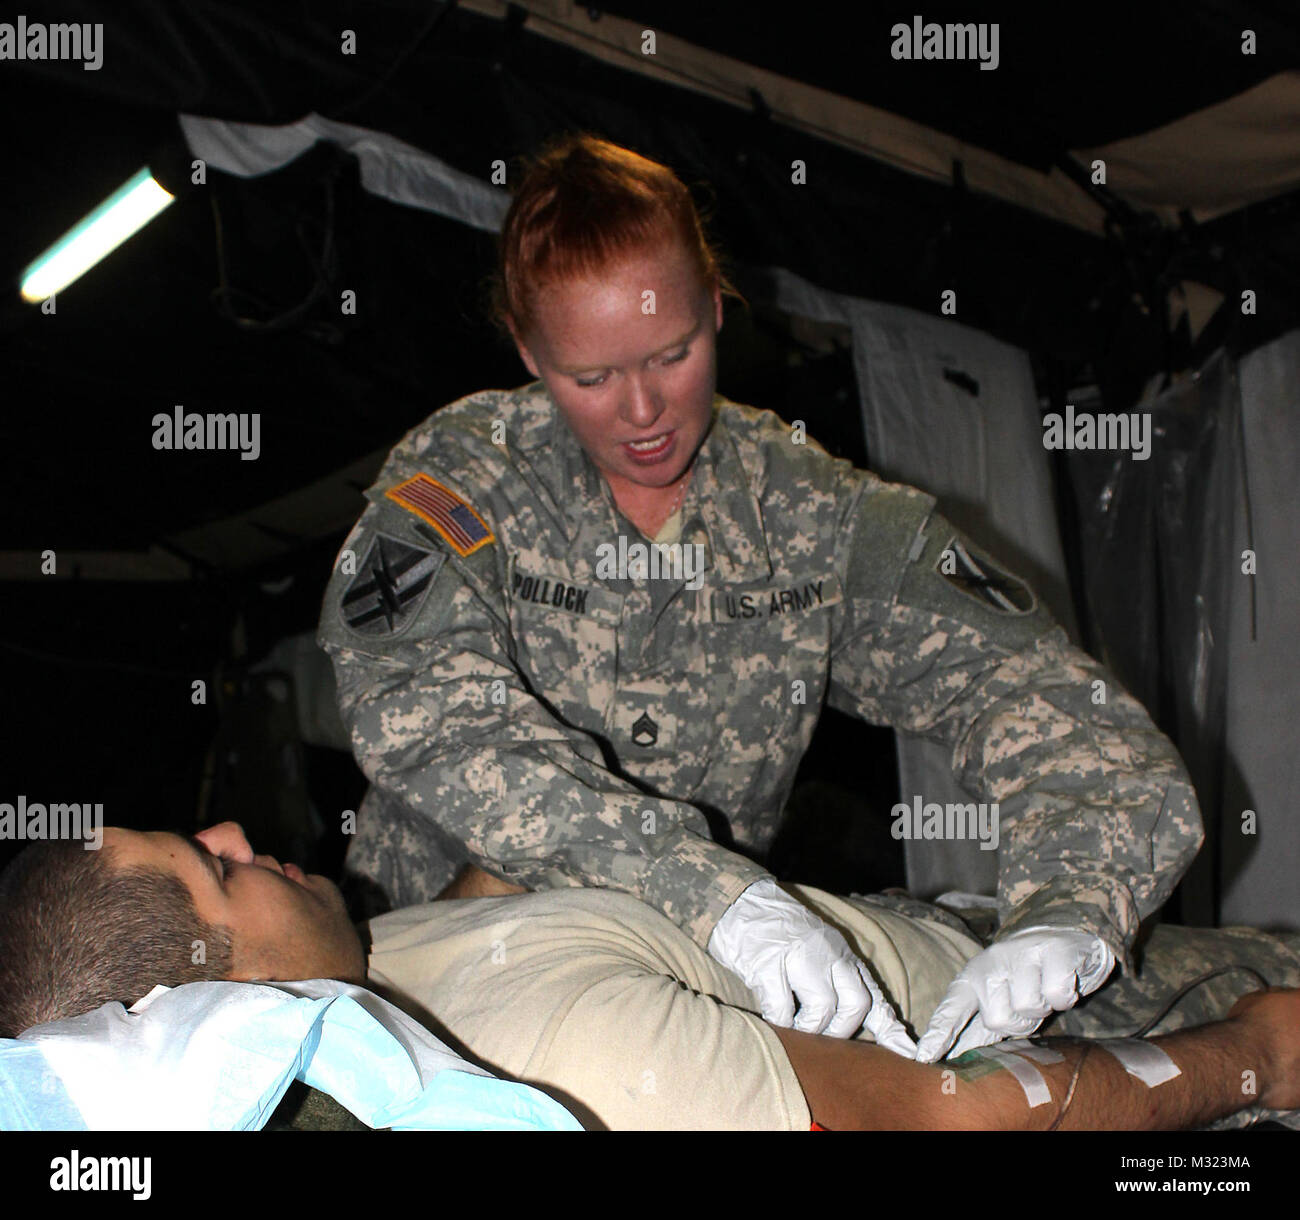 Als die medizinische Bereitschaft Unteroffizier verantwortlich spricht Staff Sgt Rebecca Pollock ihre Wärme Unfall Patienten durch eine intravenöse Therapie um Elektrolytstörungen zu korrigieren. Neun weibliche Georgien Gardisten wurden ausgewählt, um in Kampf verbundenen Positionen zu integrieren, die früher alle männlich waren. Pollock, combat Medic, wird jener in den Reihen der 48. Infantry Brigade Combat Team Linie Unternehmen gewählt. 48. IBCT ist eine der neun Army National Guard Infanteriebrigaden, die Berechtigung zum Zuweisen von Frauen, ihre Manöver-Bataillone zu erhalten. "Ich kenne eine Menge von der Stockfoto